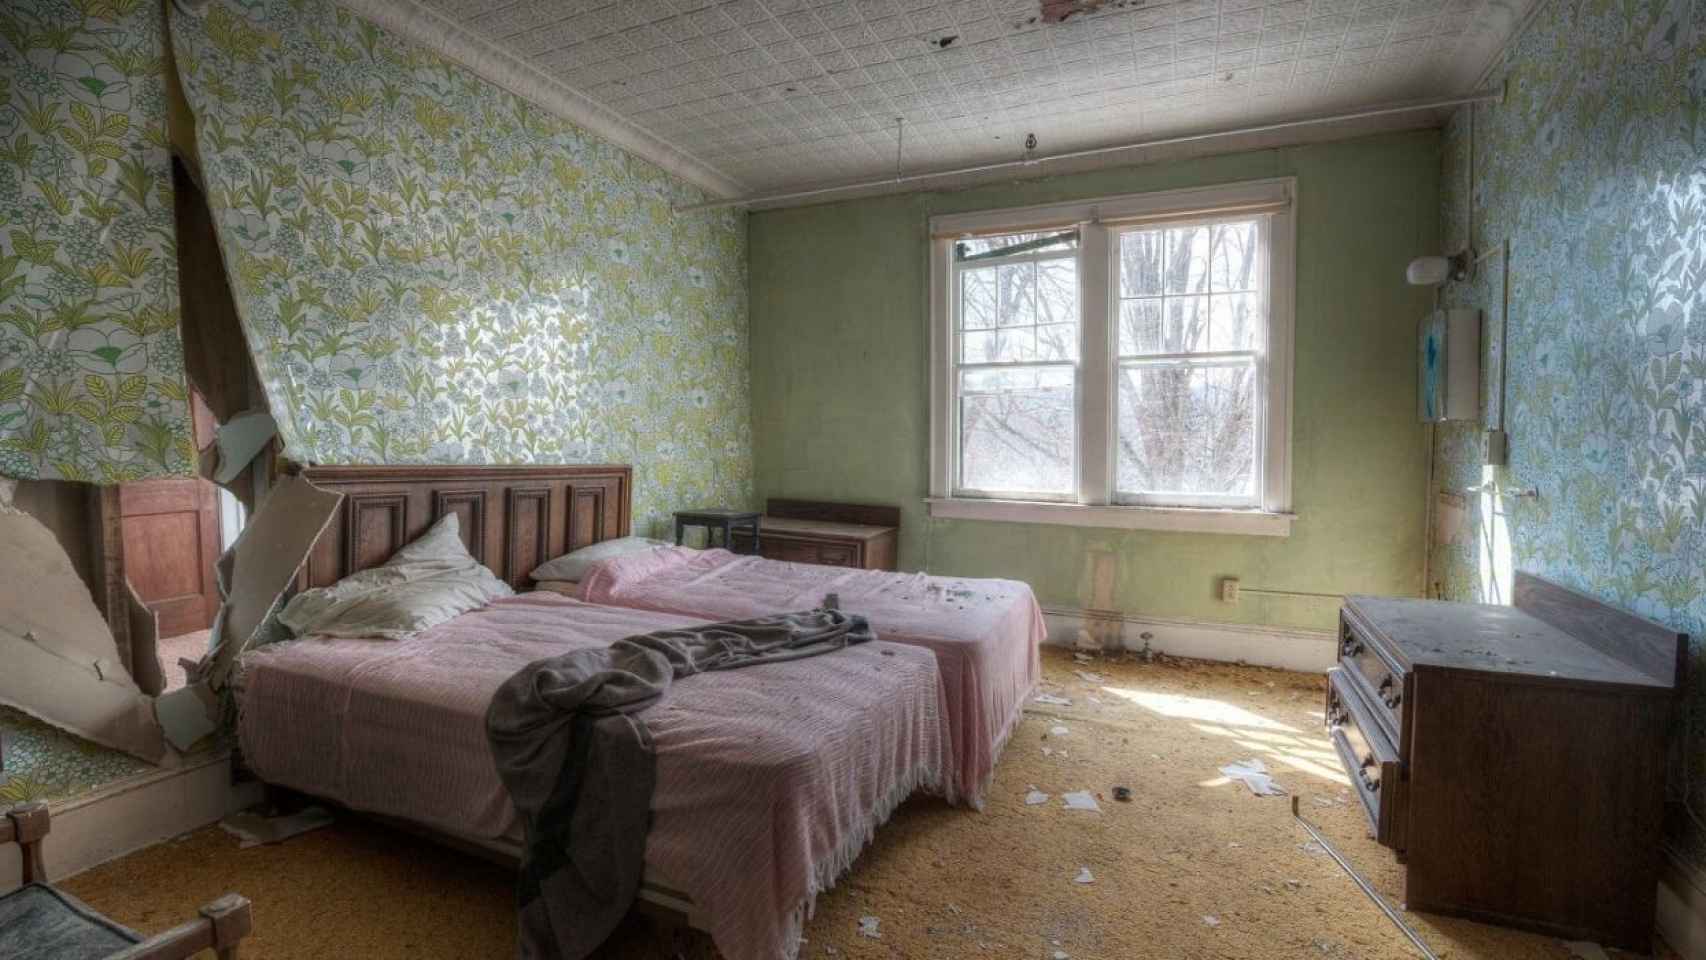 Una habitación de hotel sucia, destrozada y llena de porquería